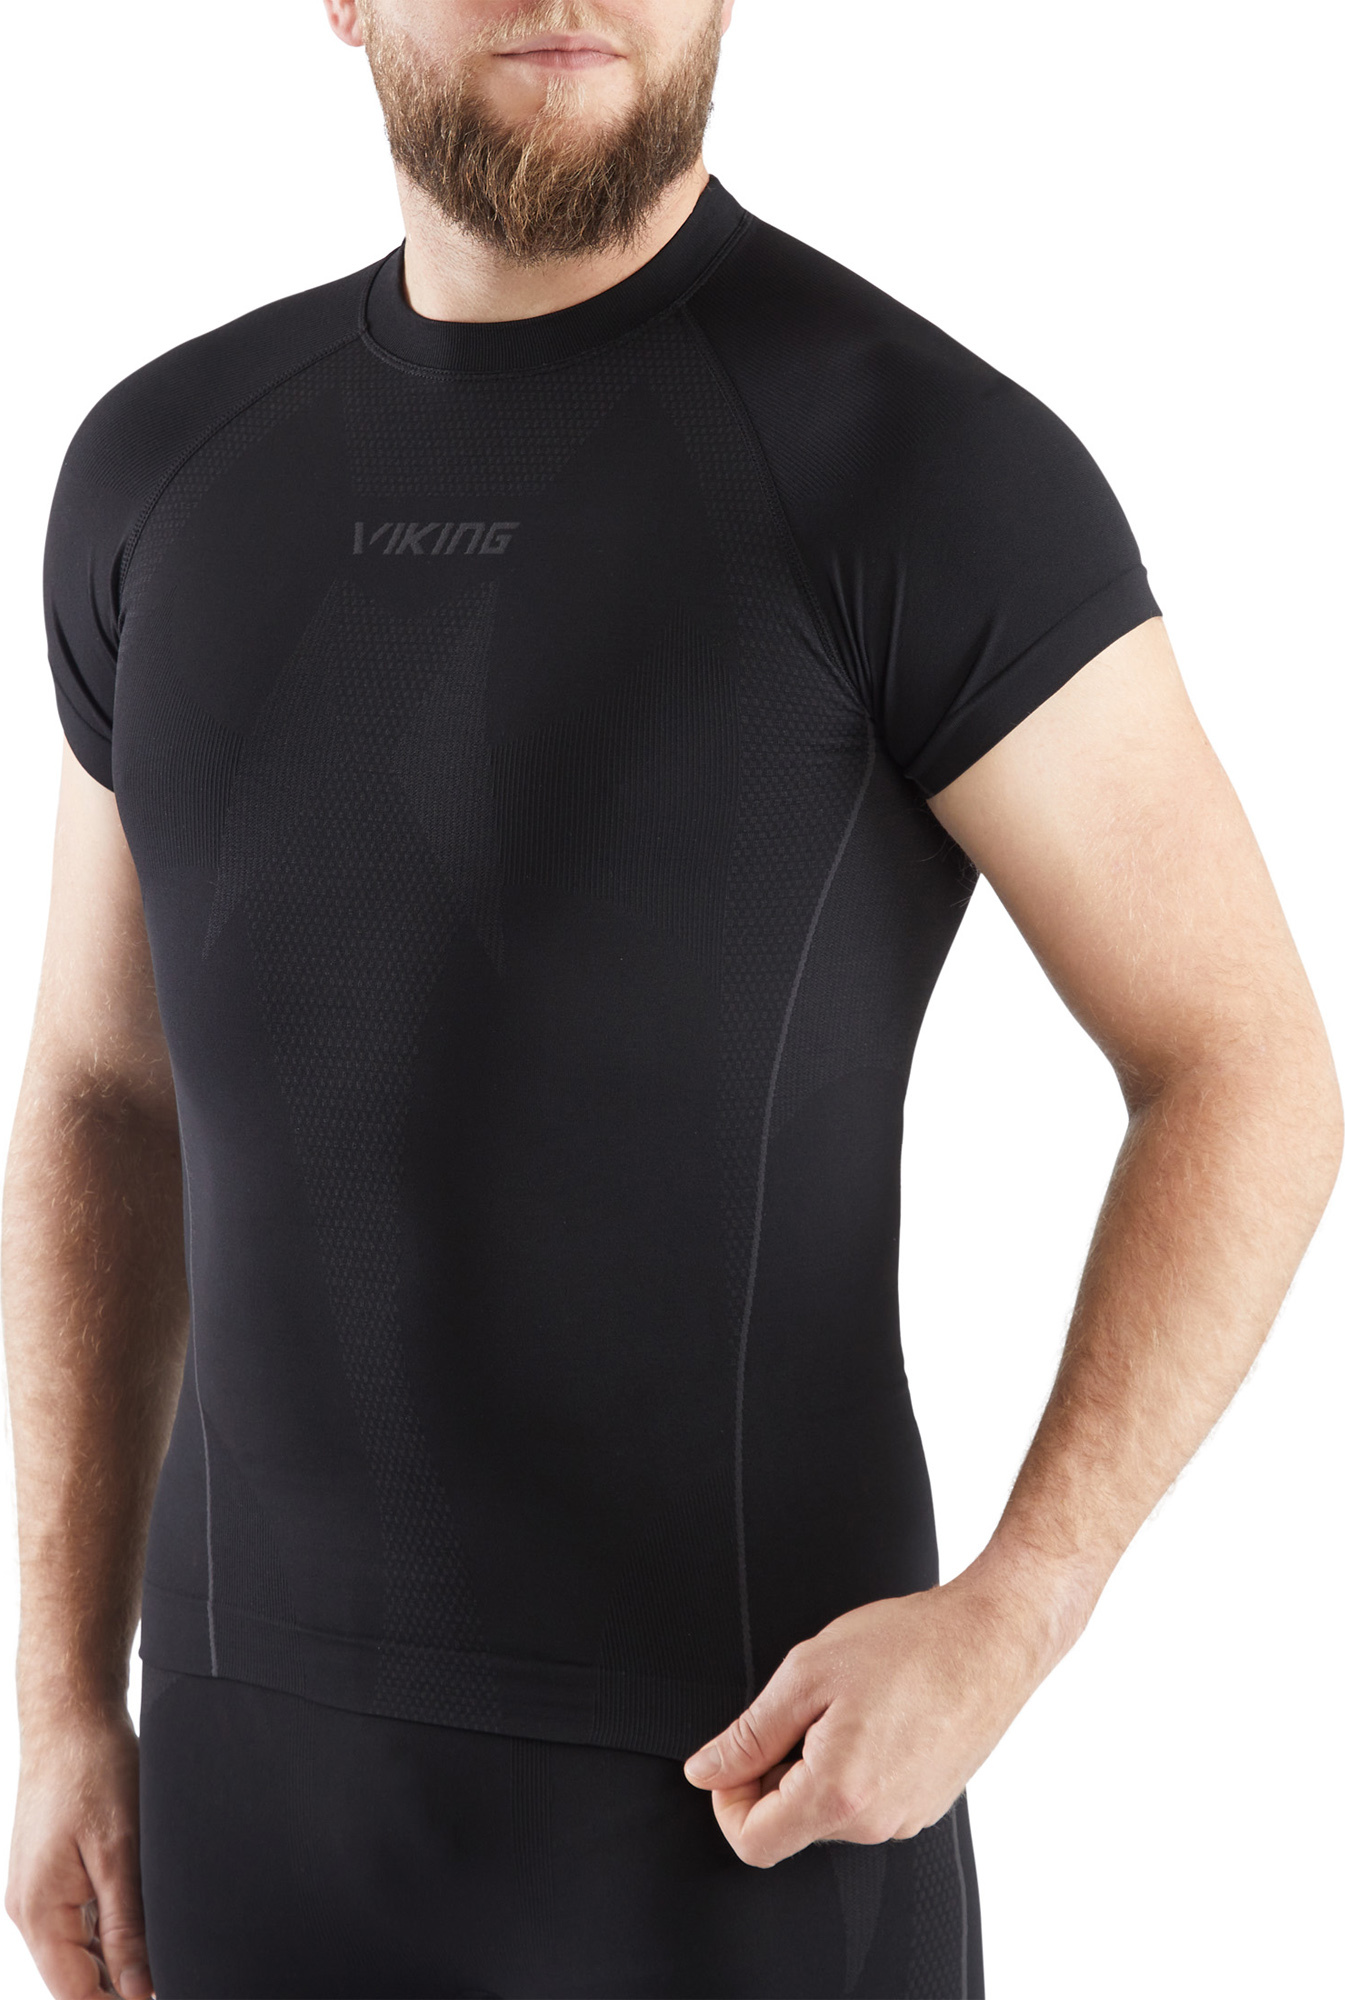 Pánské triko s krátkým rukávem VIKING Eiger Top černá Velikost: S